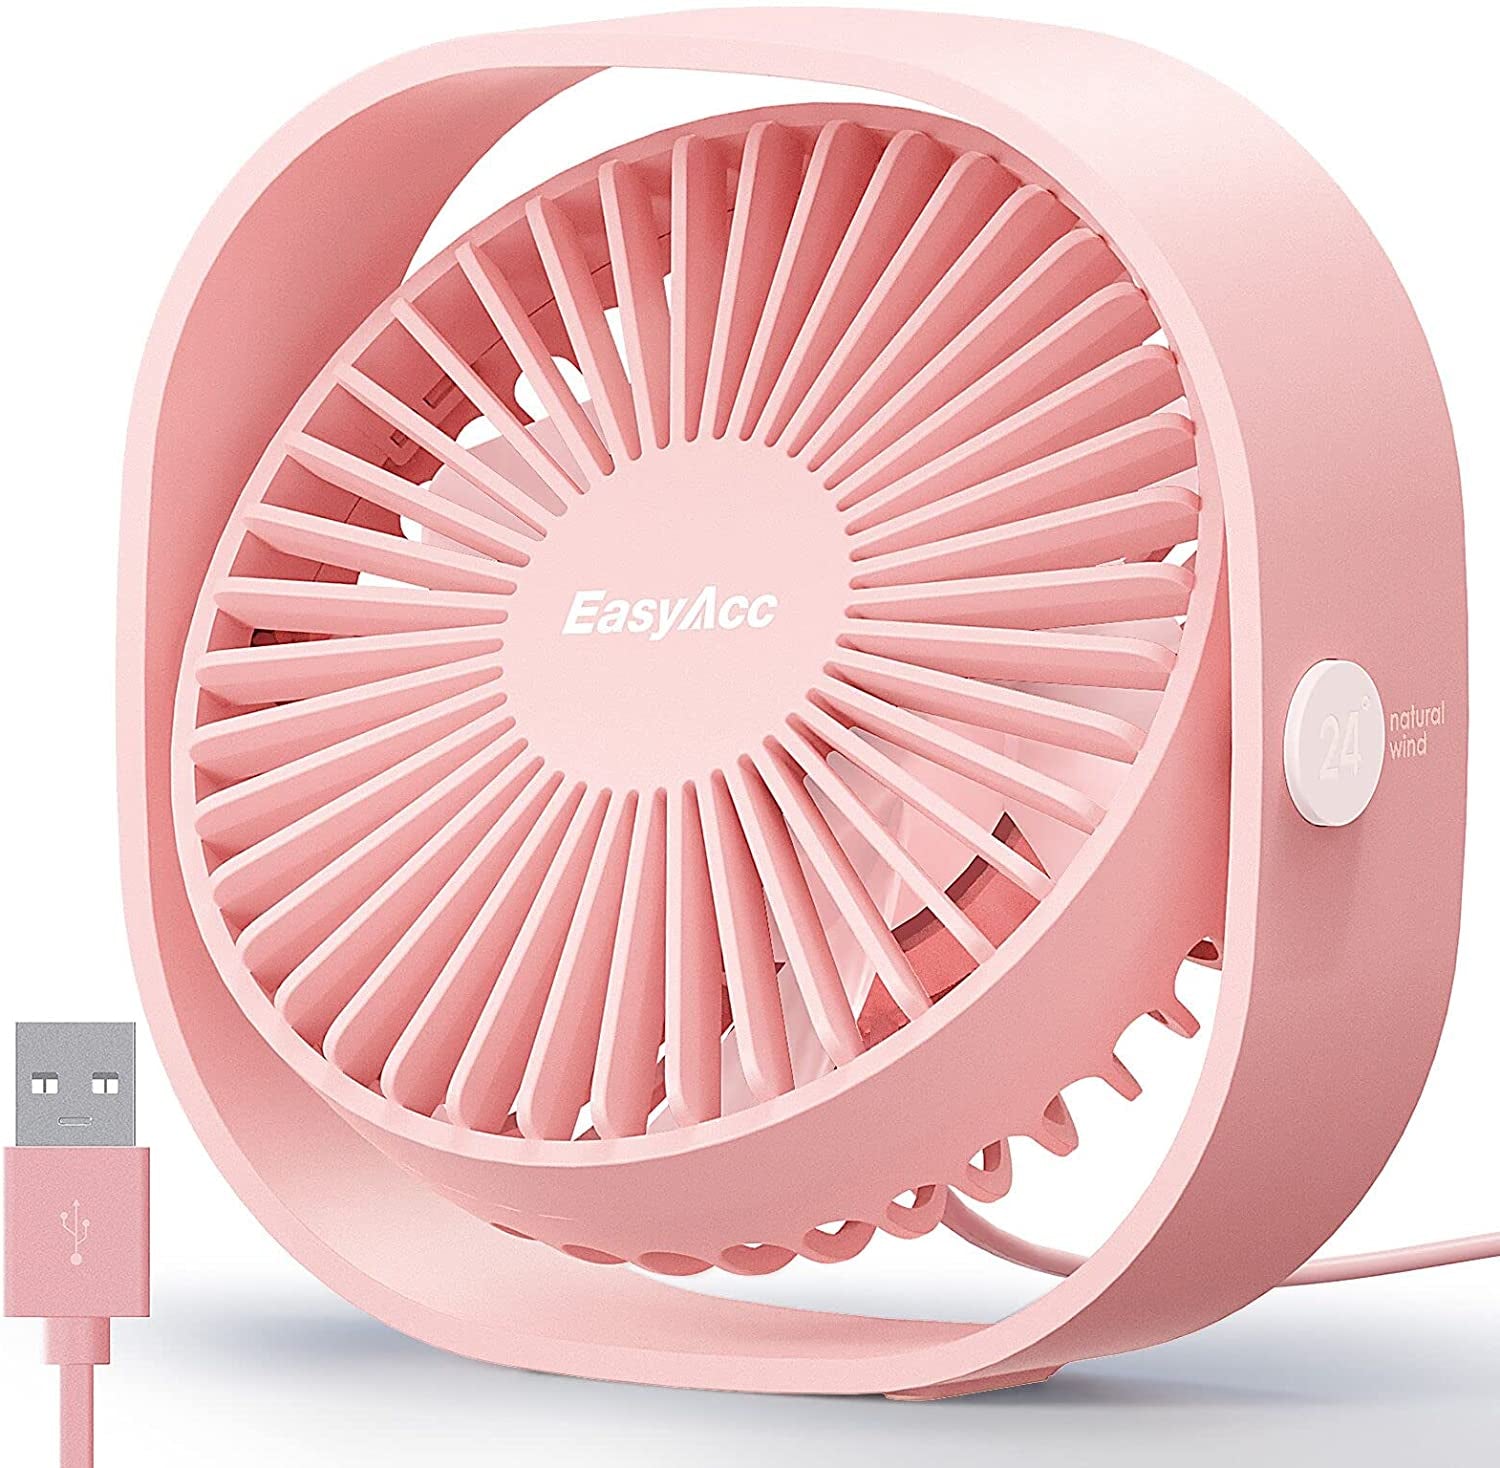 USB Desk Fan, 3 Speeds Mini USB Fan[Small Silent Pink Desk Fan] USB Portable Powered Fan, 360°Rotatable Personal Desktop Table Fan Travel Fan for Desk Home Bedroom Office, Pink (No Battery)